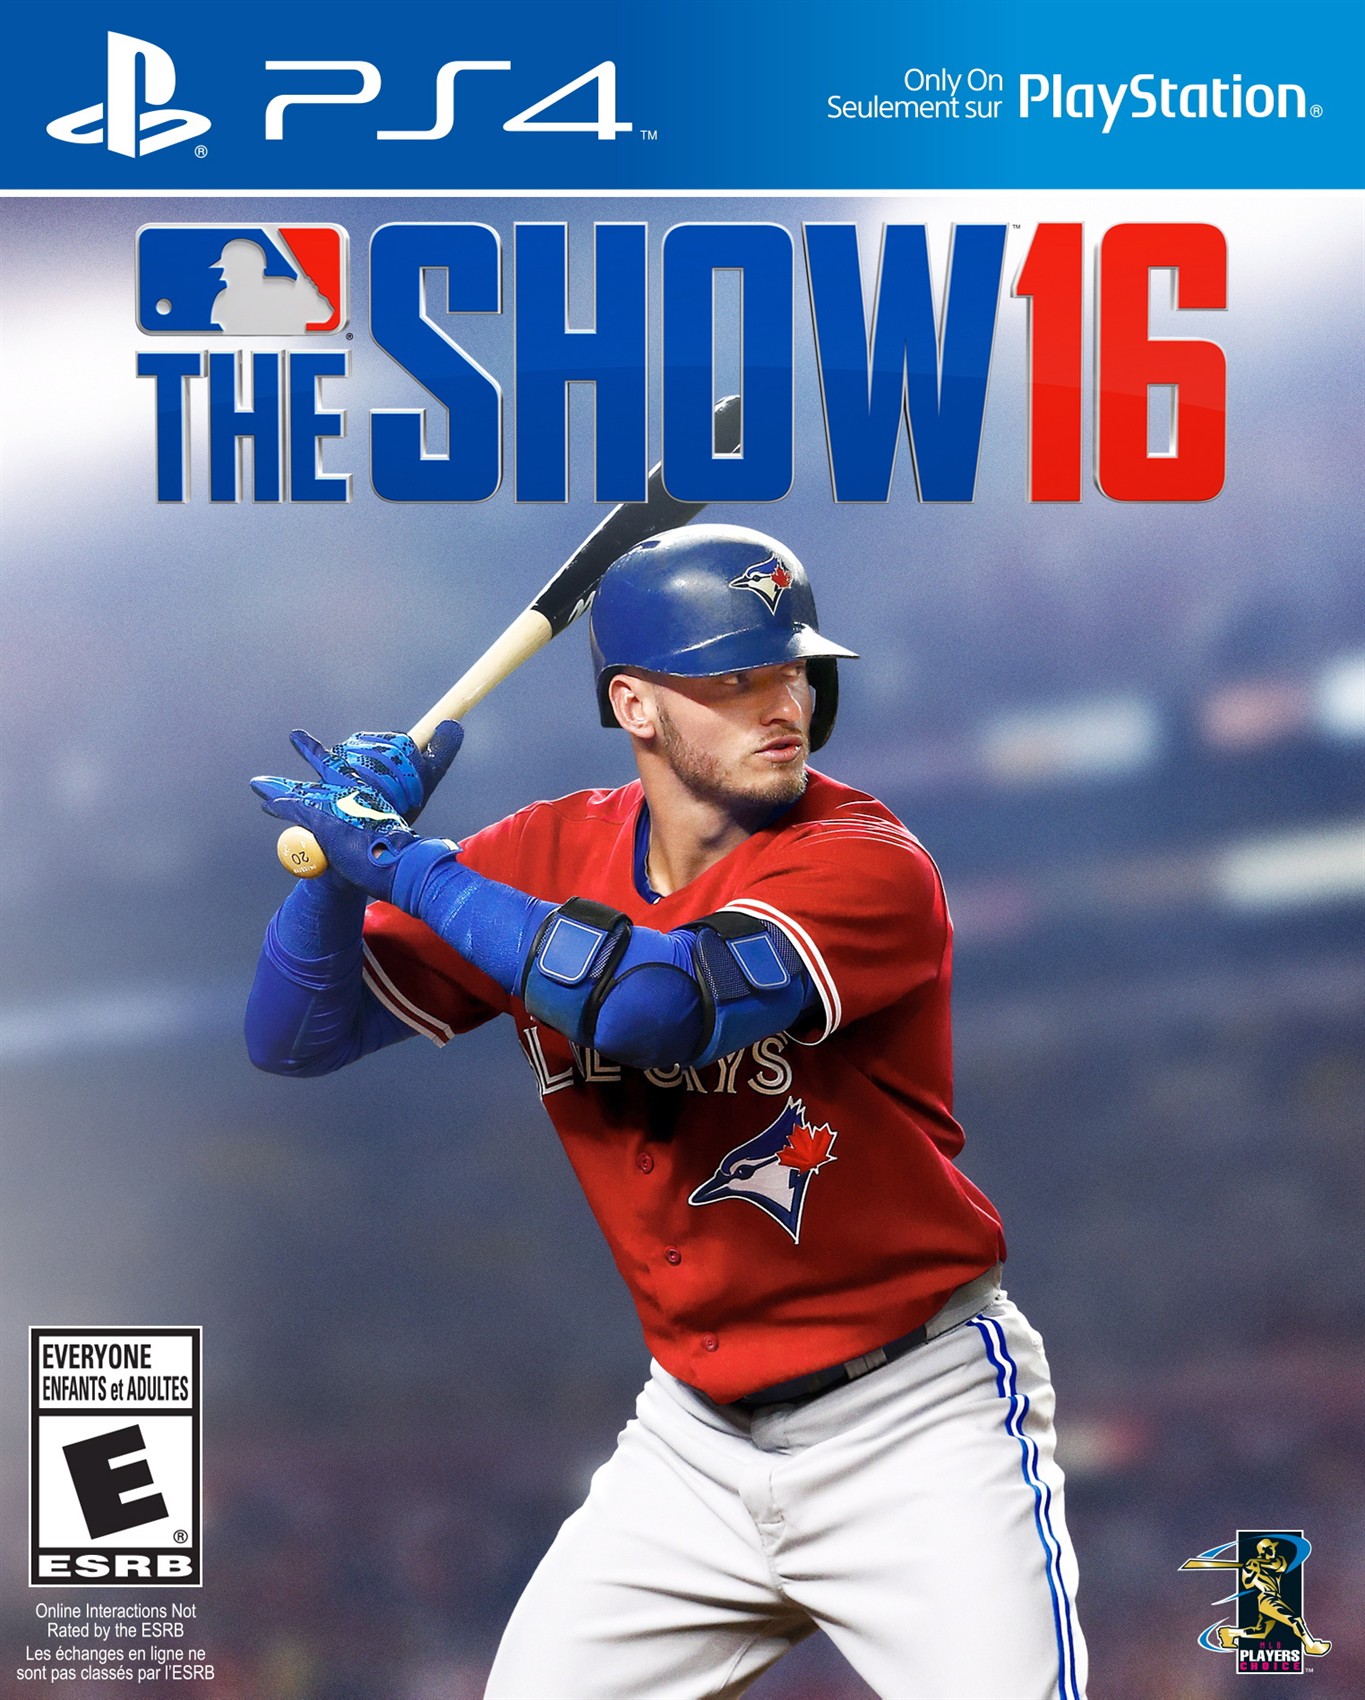 Kết quả hình ảnh cho MLB The Show 16 cover ps4